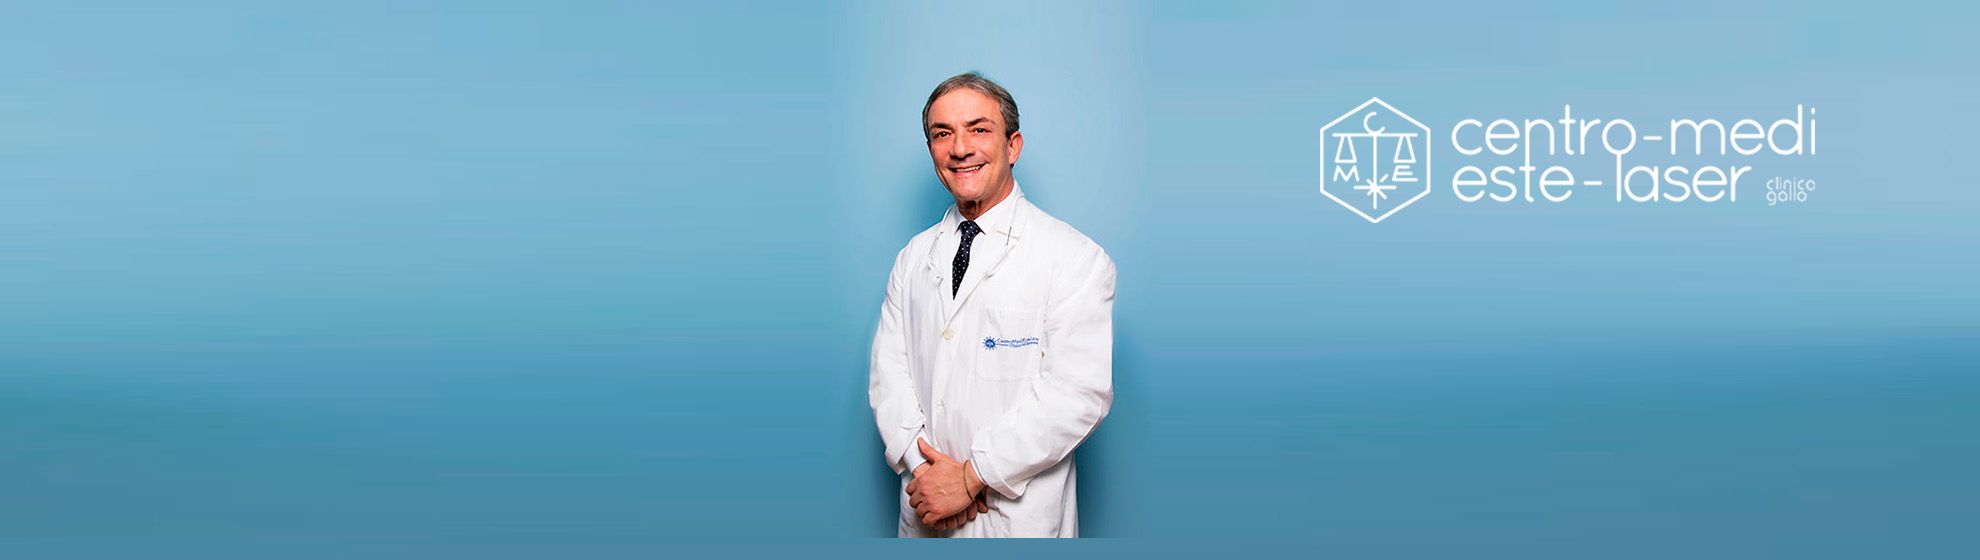 Dott. Giovanni Gallo